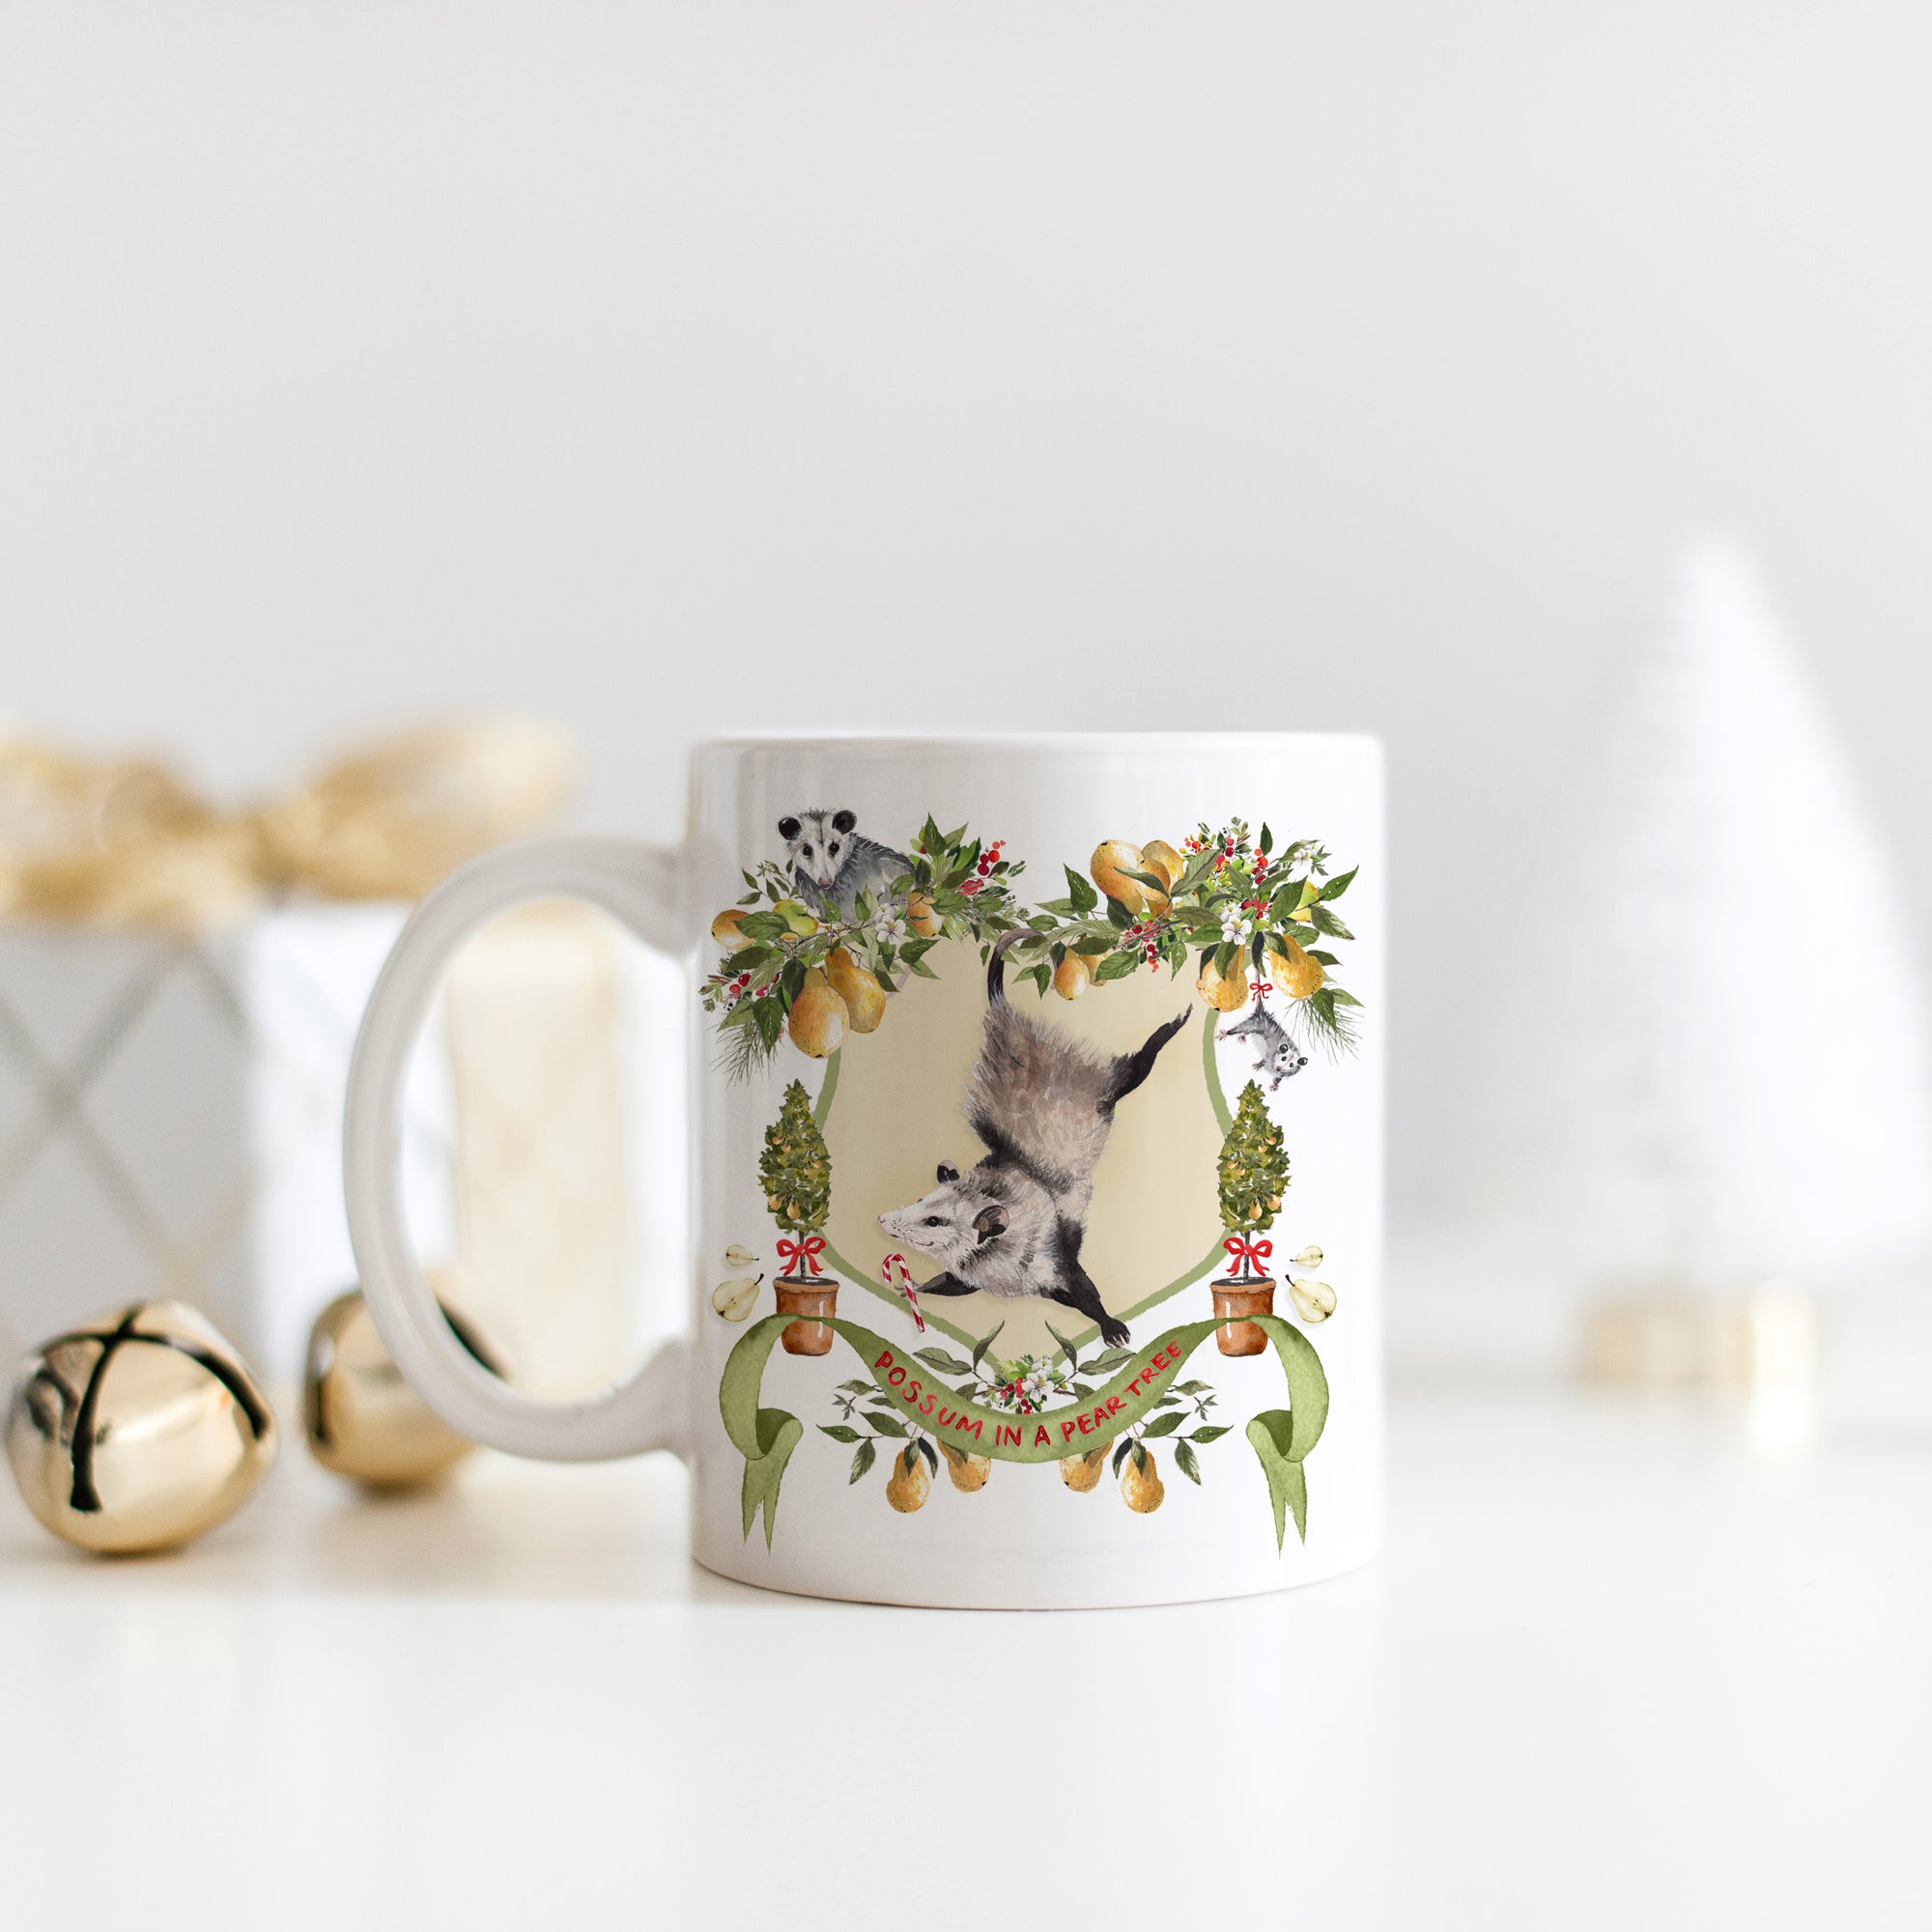 Possum in a Pear Tree Christmas Mug